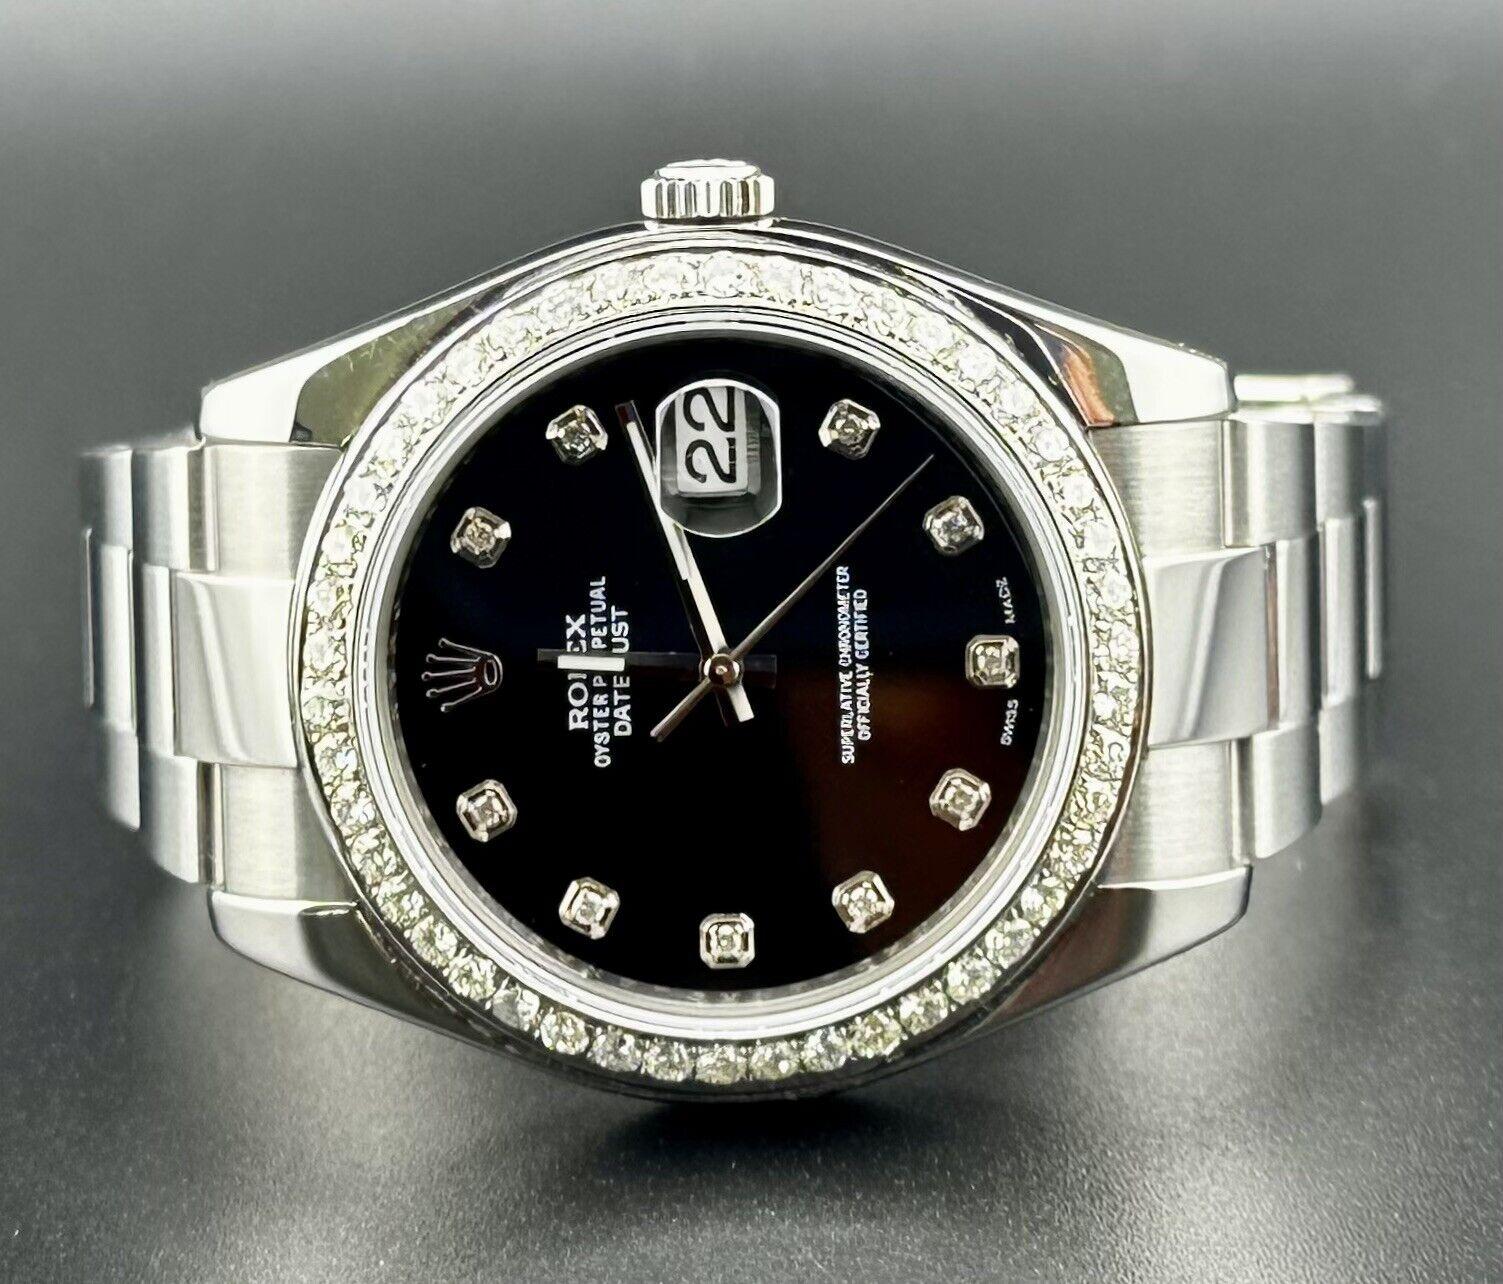 Rolex Datejust 41mm Uhr. Ein Pre-owned Uhr w / Geschenk-Box. Die Uhr selbst ist authentisch und wird mit Echtheitskarte geliefert. Watch Reference ist 116300 und ist in ausgezeichnetem Zustand (siehe Bilder). Das Zifferblatt Farbe ist schwarz (Haben